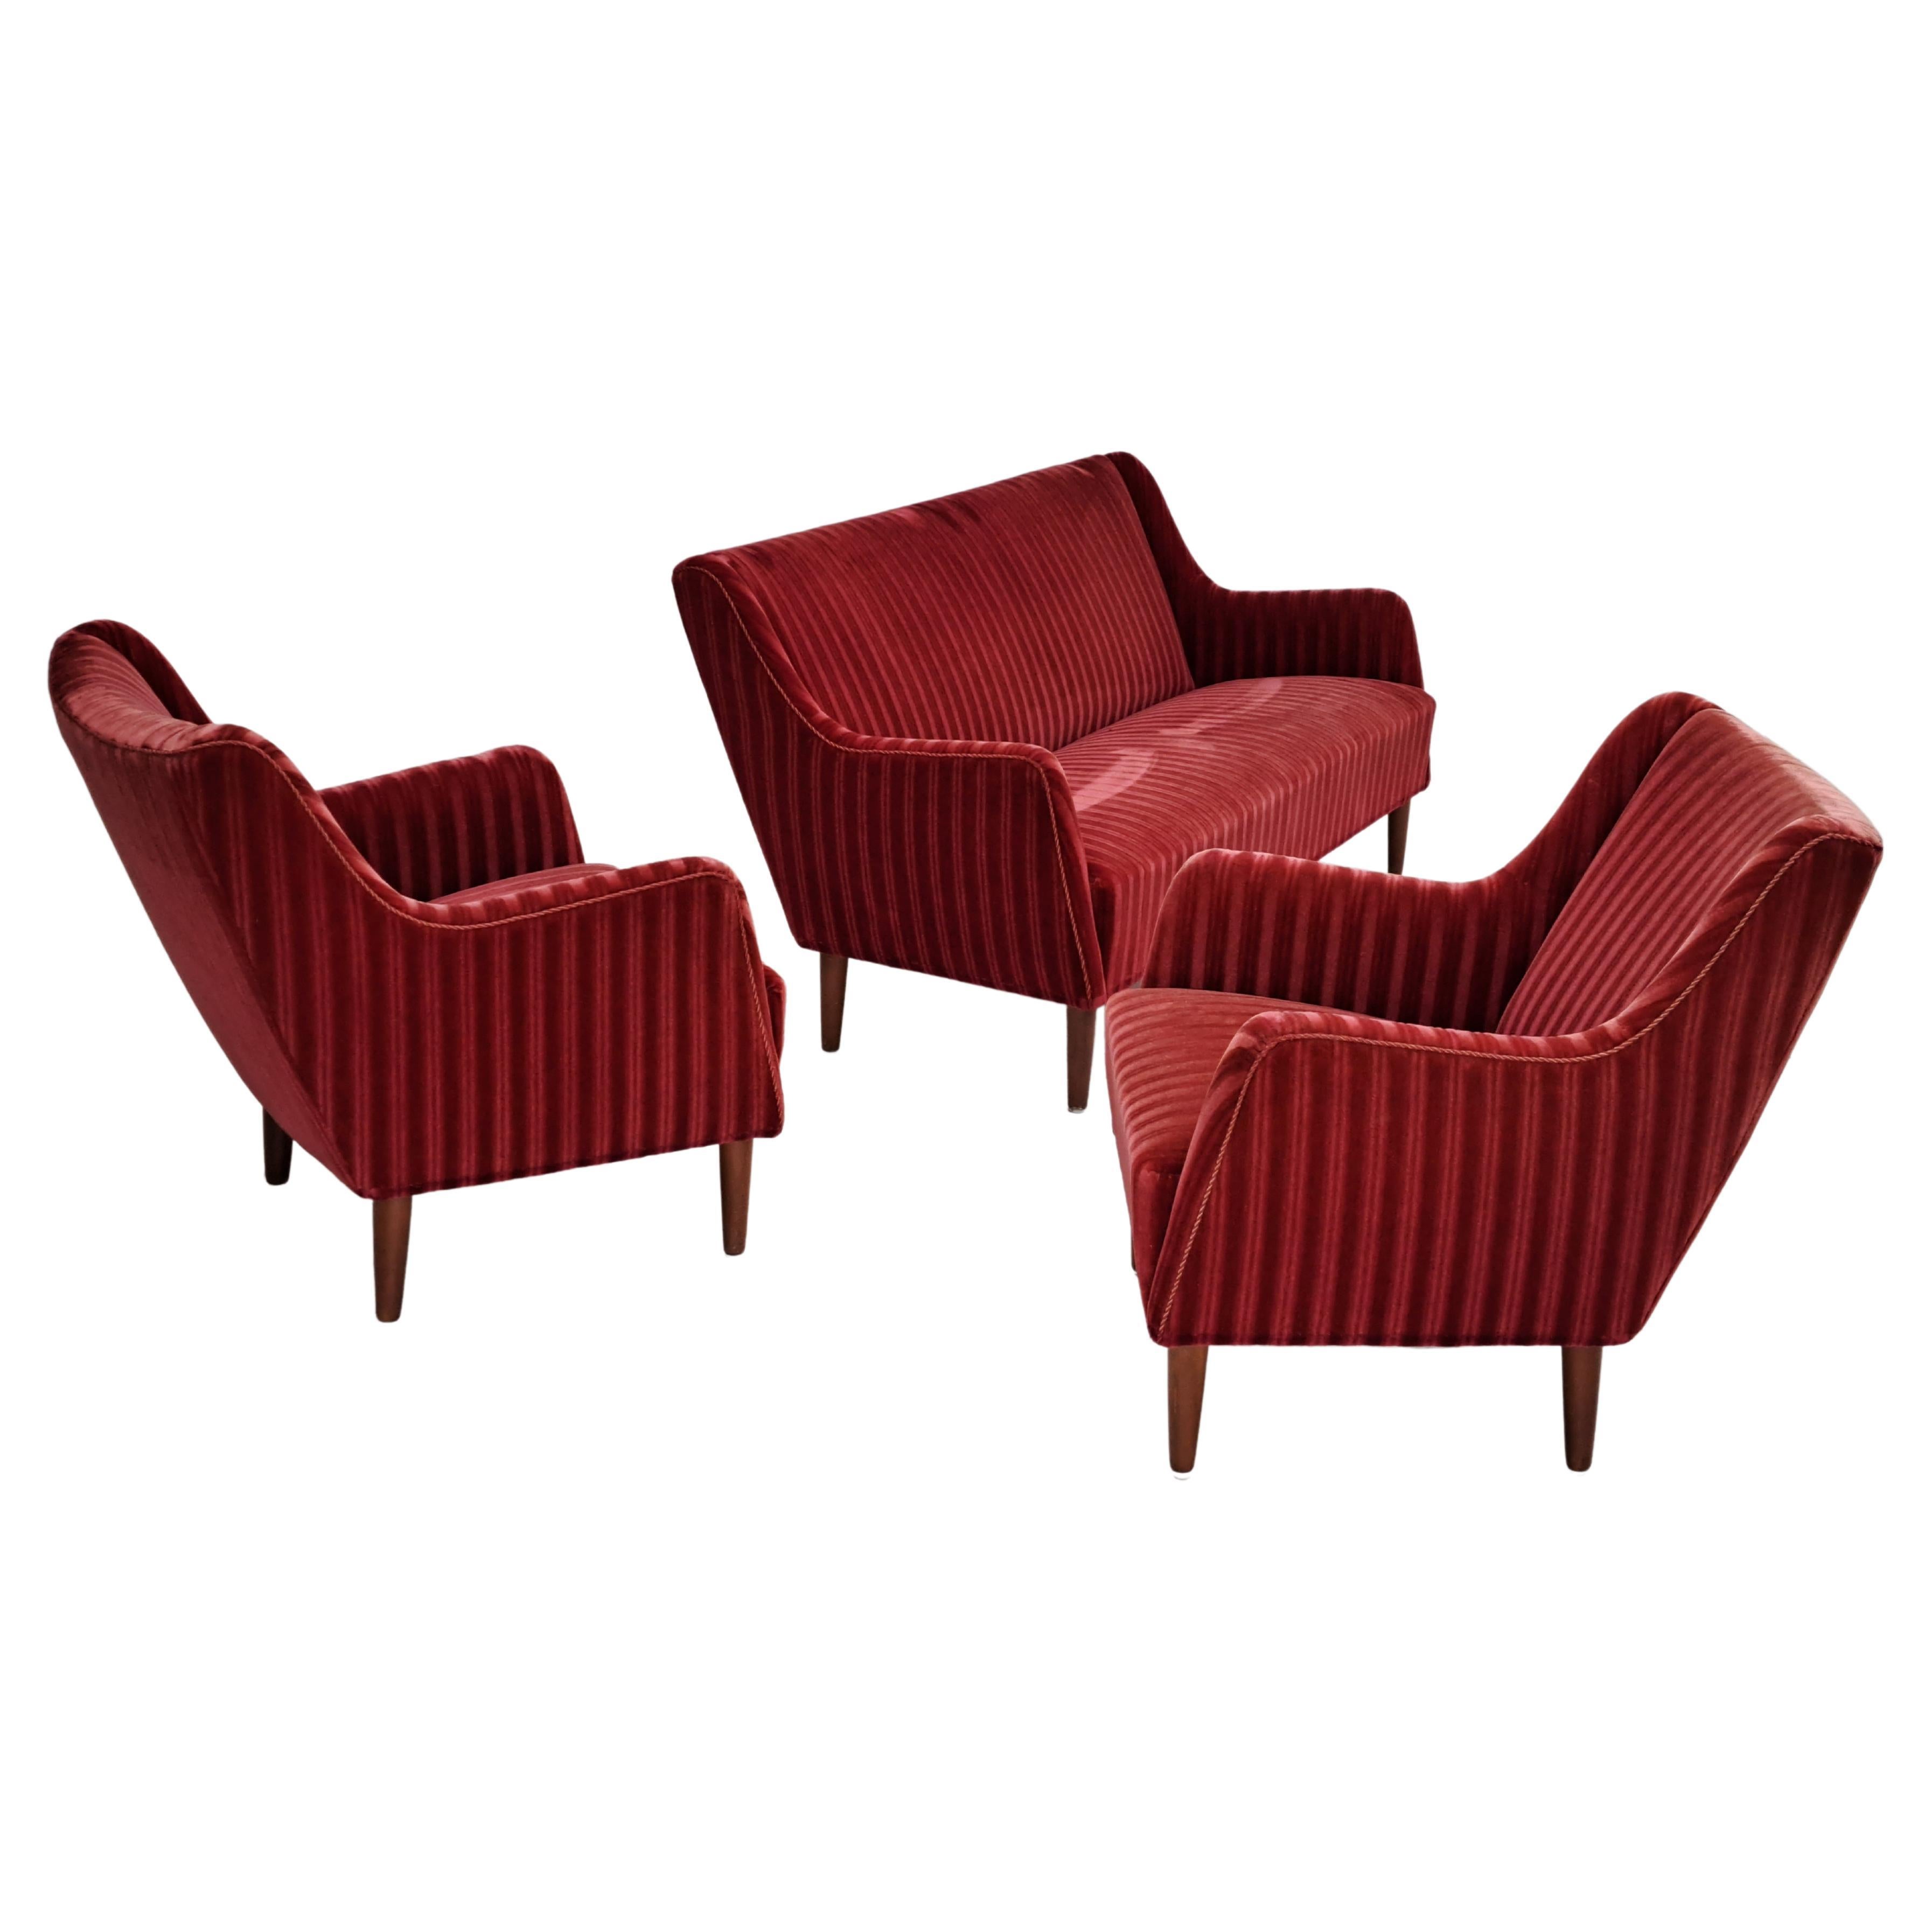 60s, Danish design, sofa set, 2 armchairs + sofa, velour, original condition